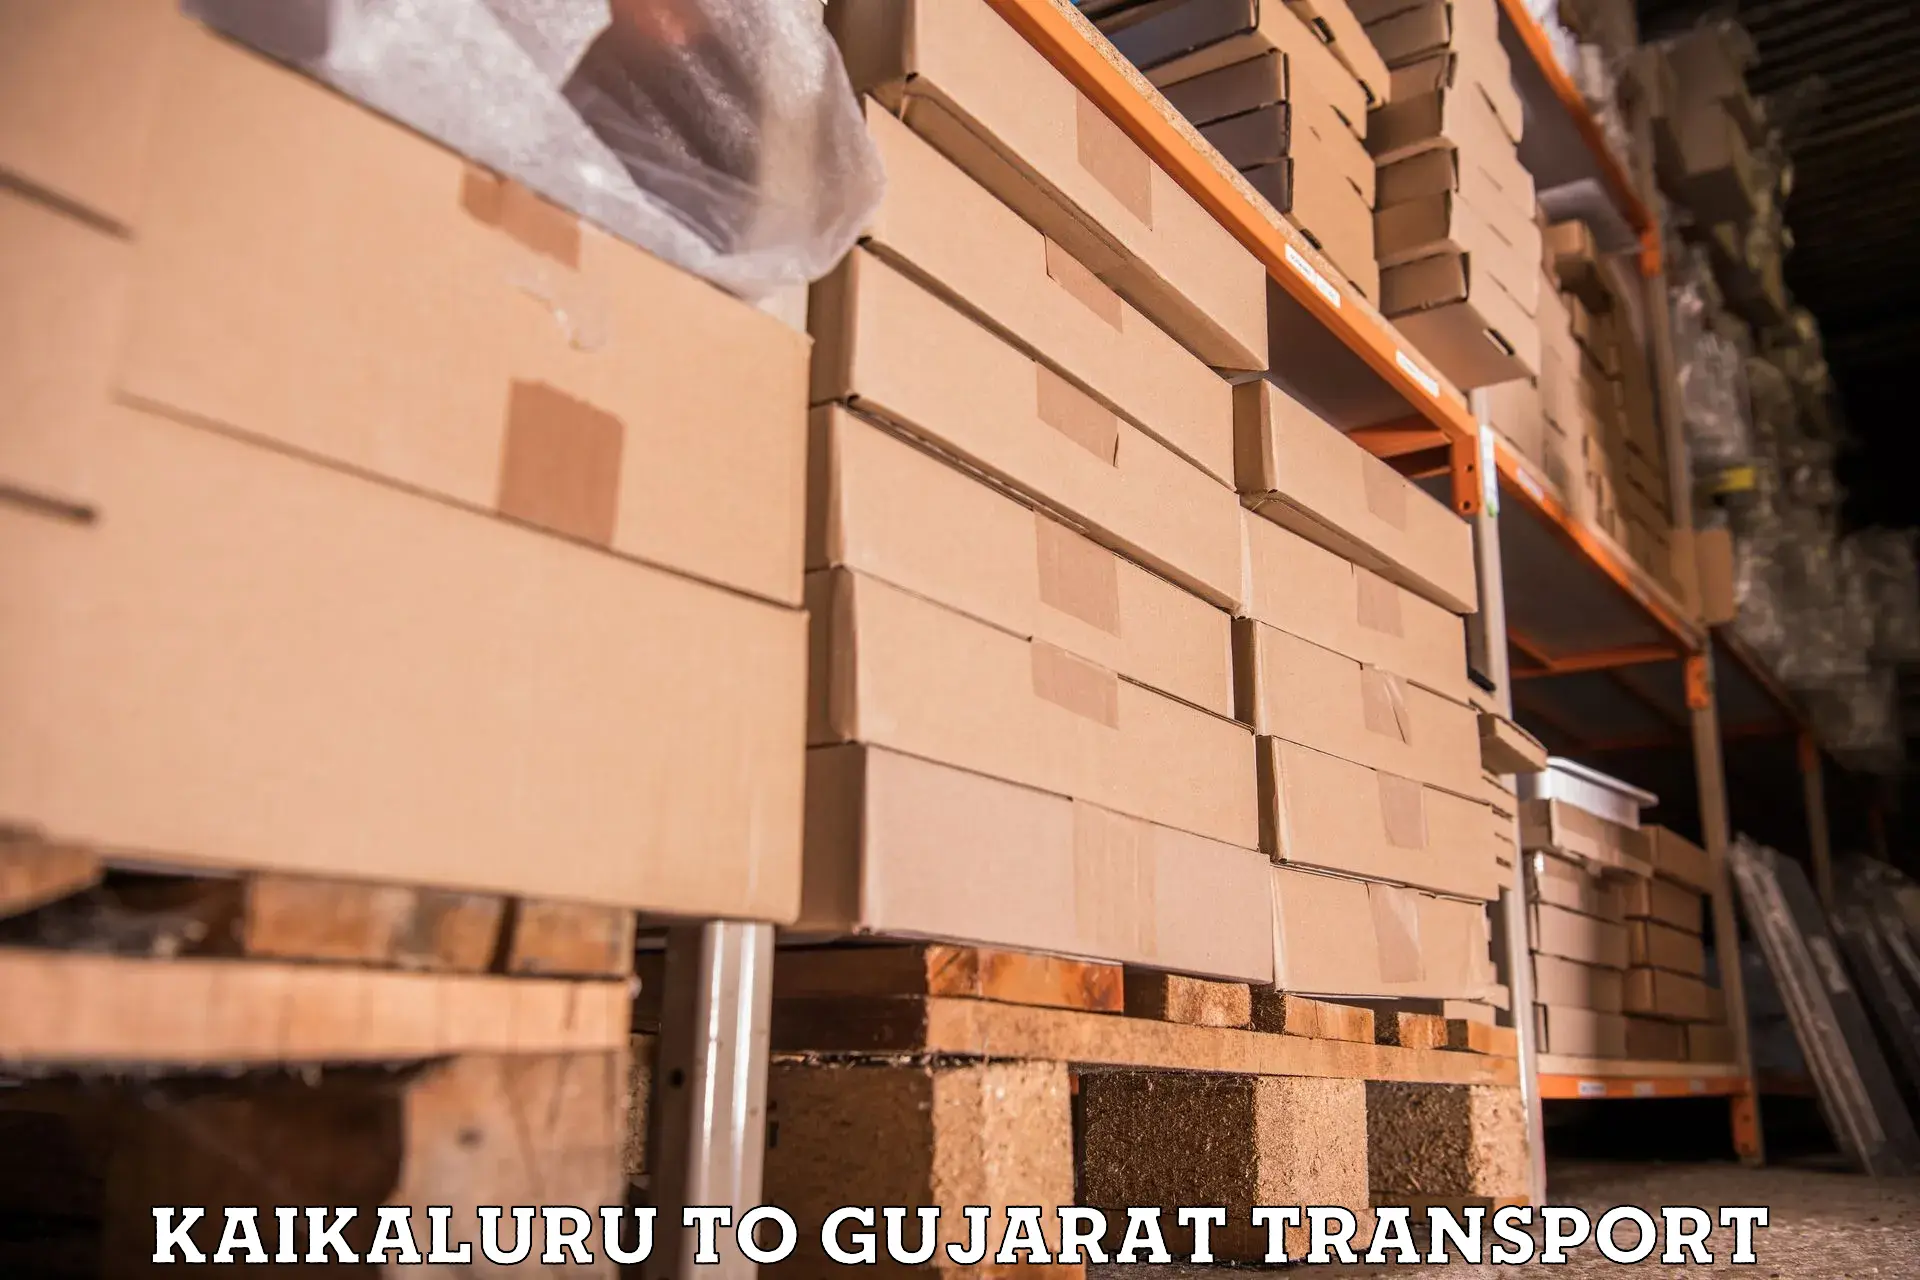 Daily transport service Kaikaluru to Mahemdavad